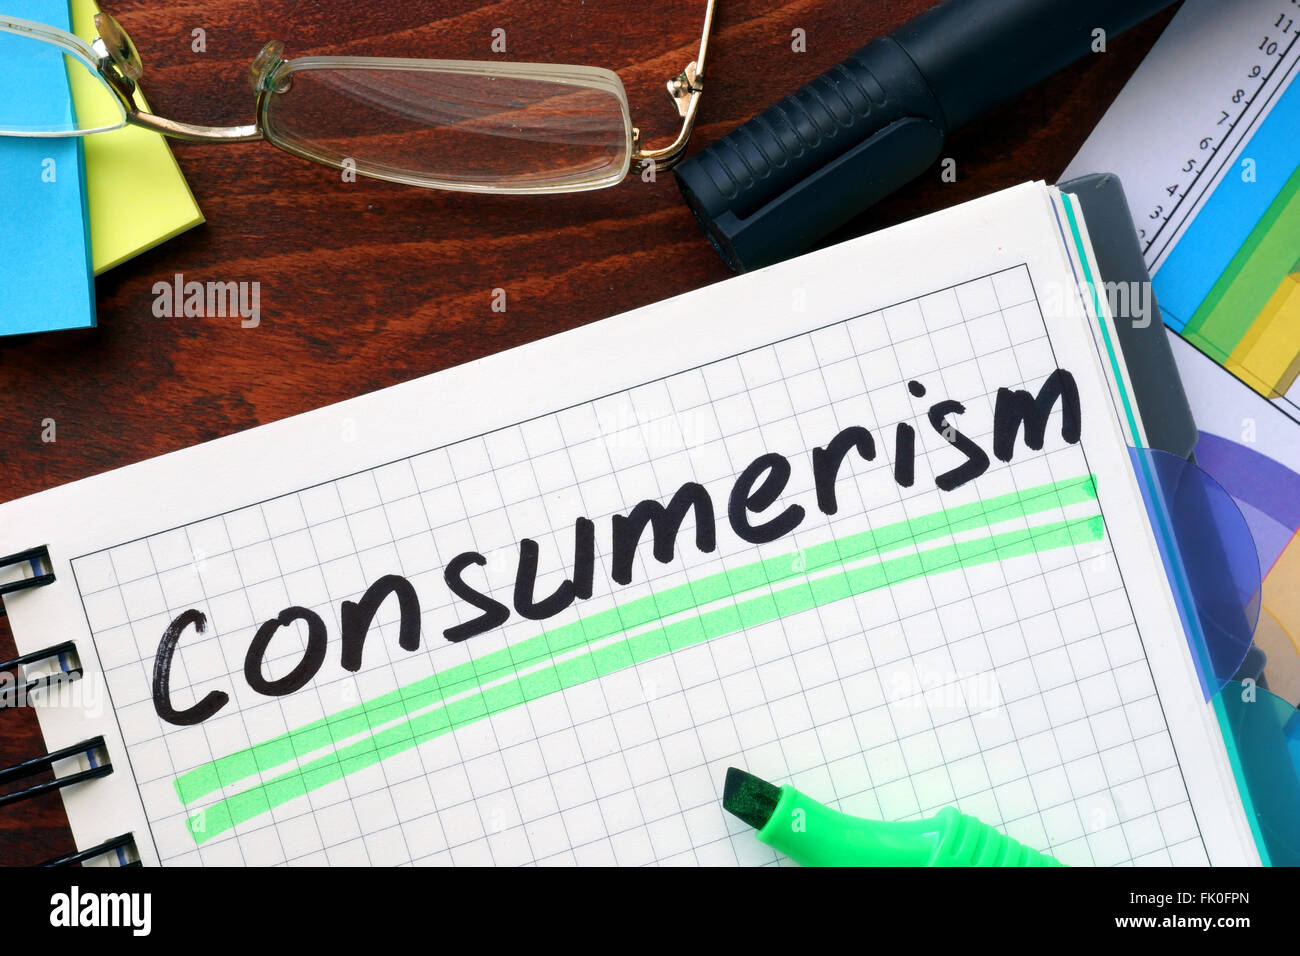 El consumismo concepto escrito en un cuaderno sobre una mesa de madera. Foto de stock